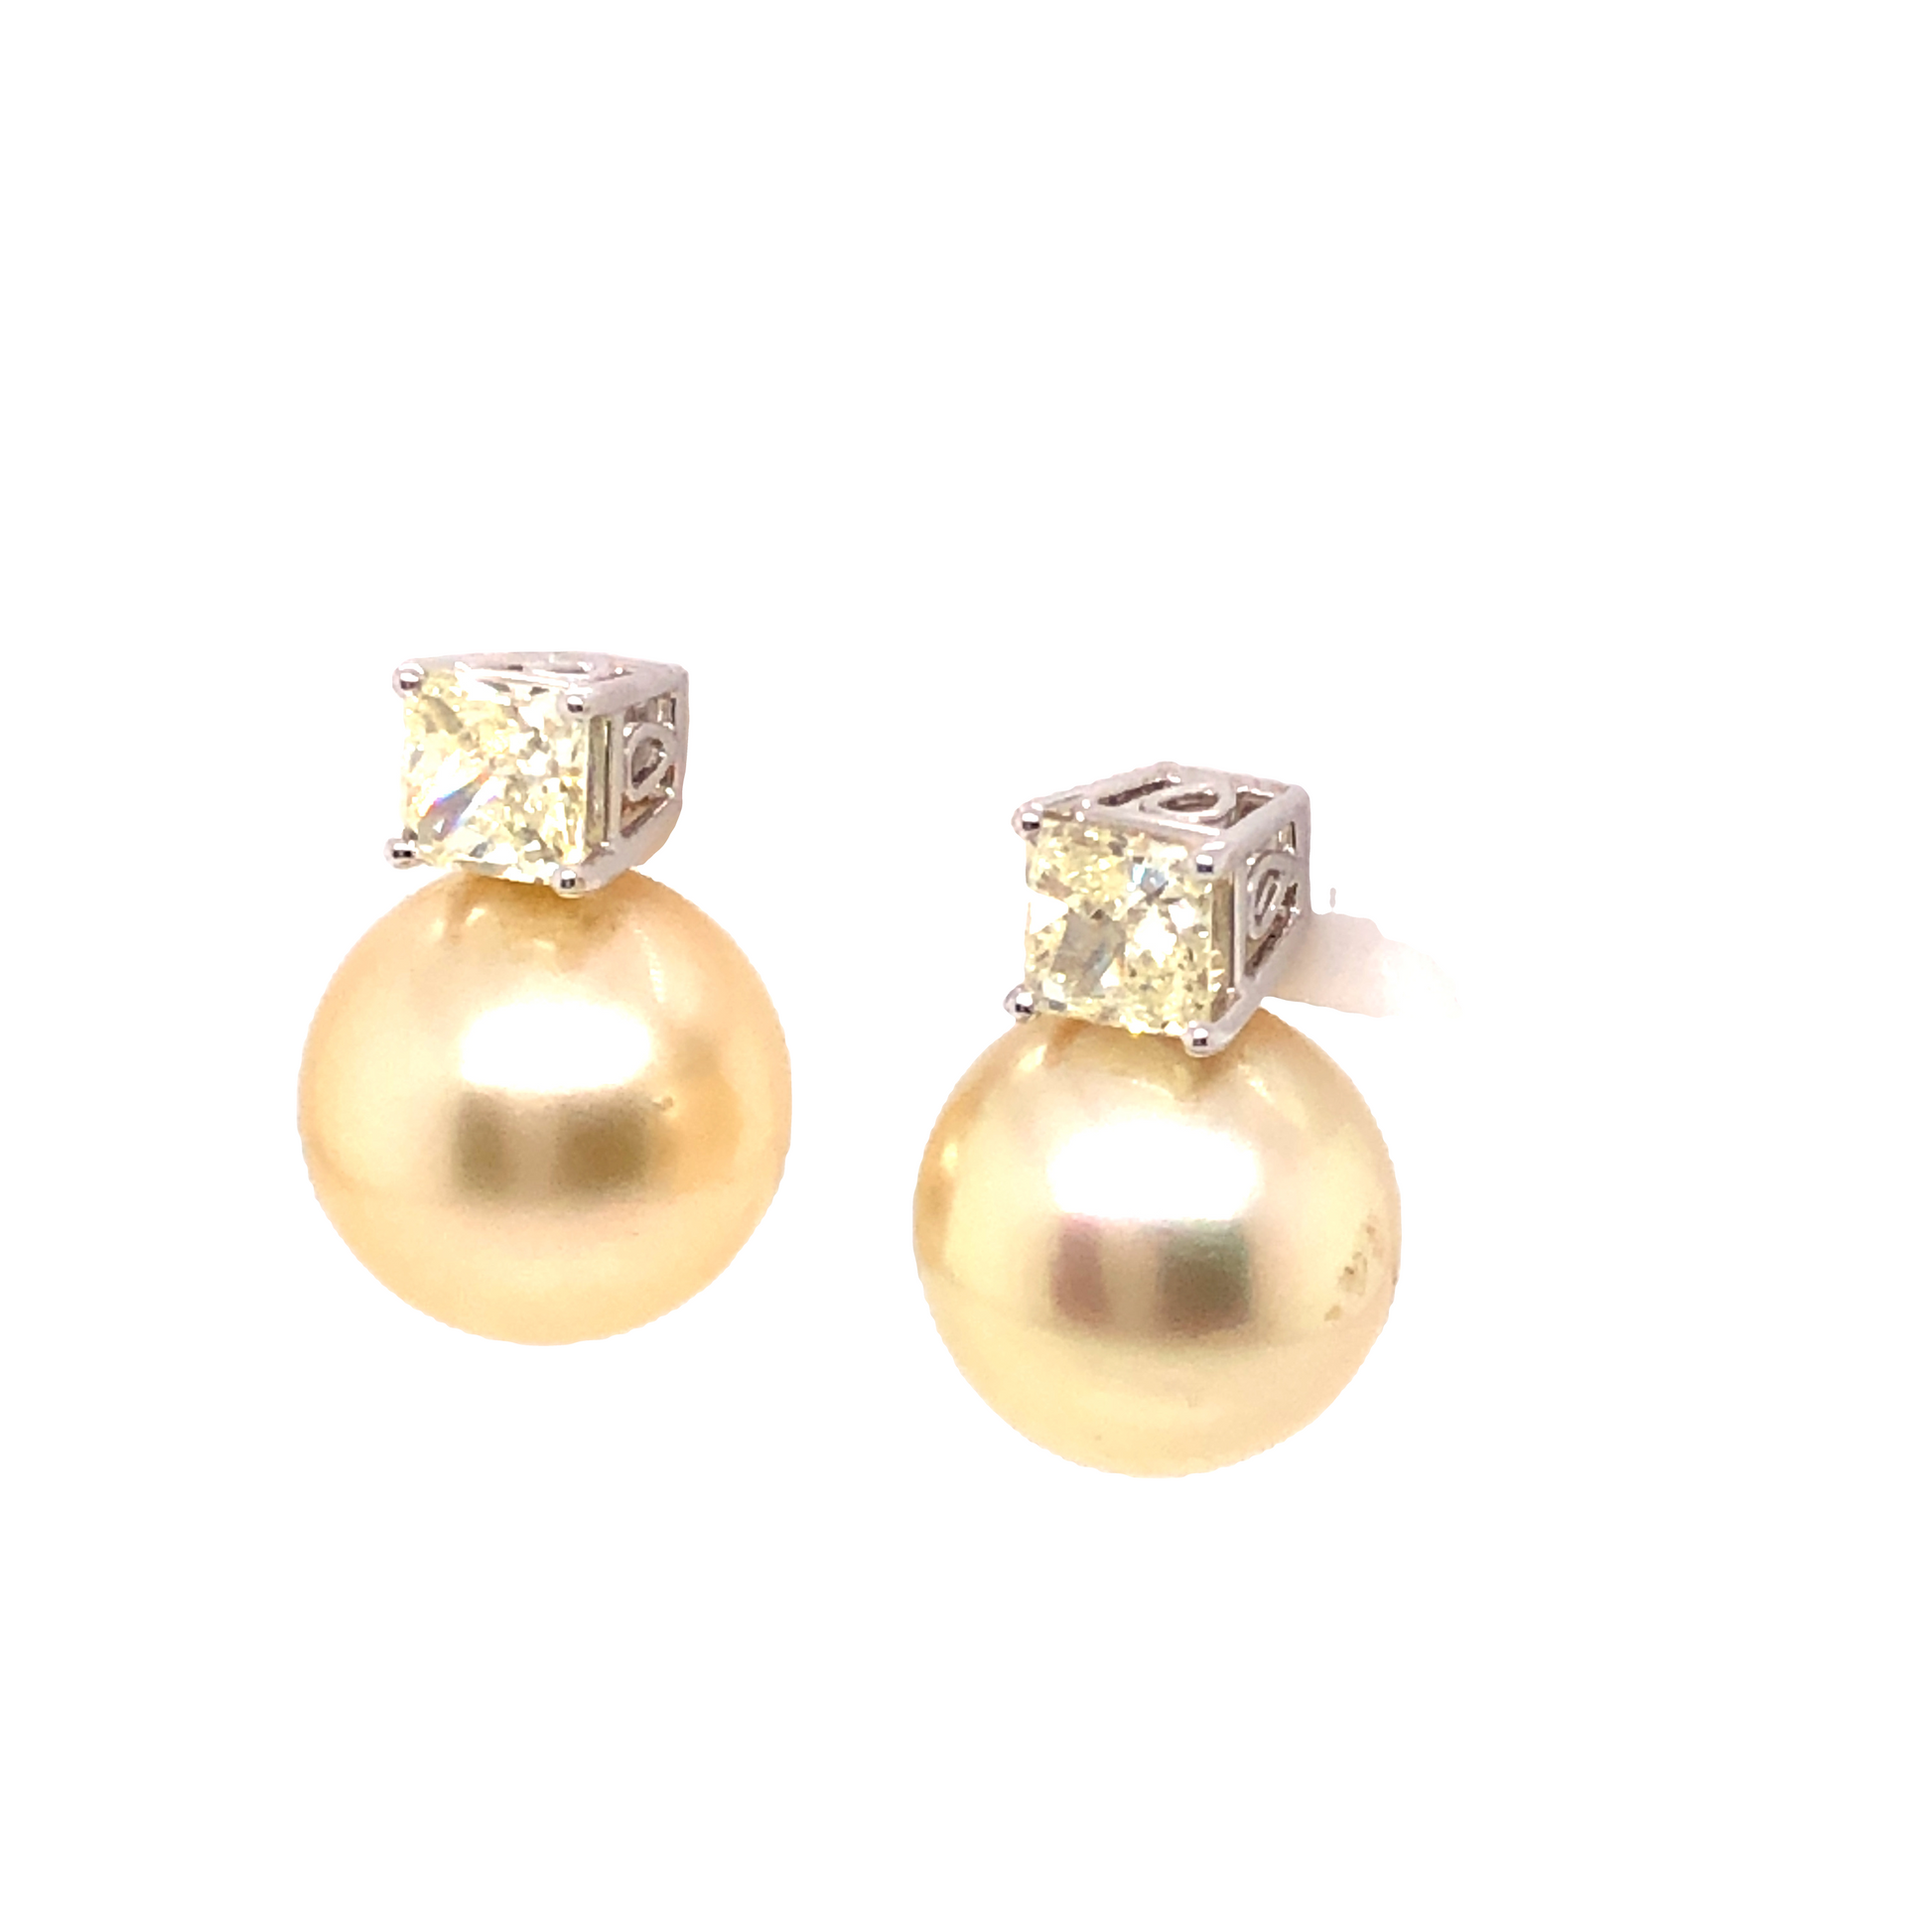 1.04 Fancy Light Yellow Diamond & Pearl Earrings in Platinum